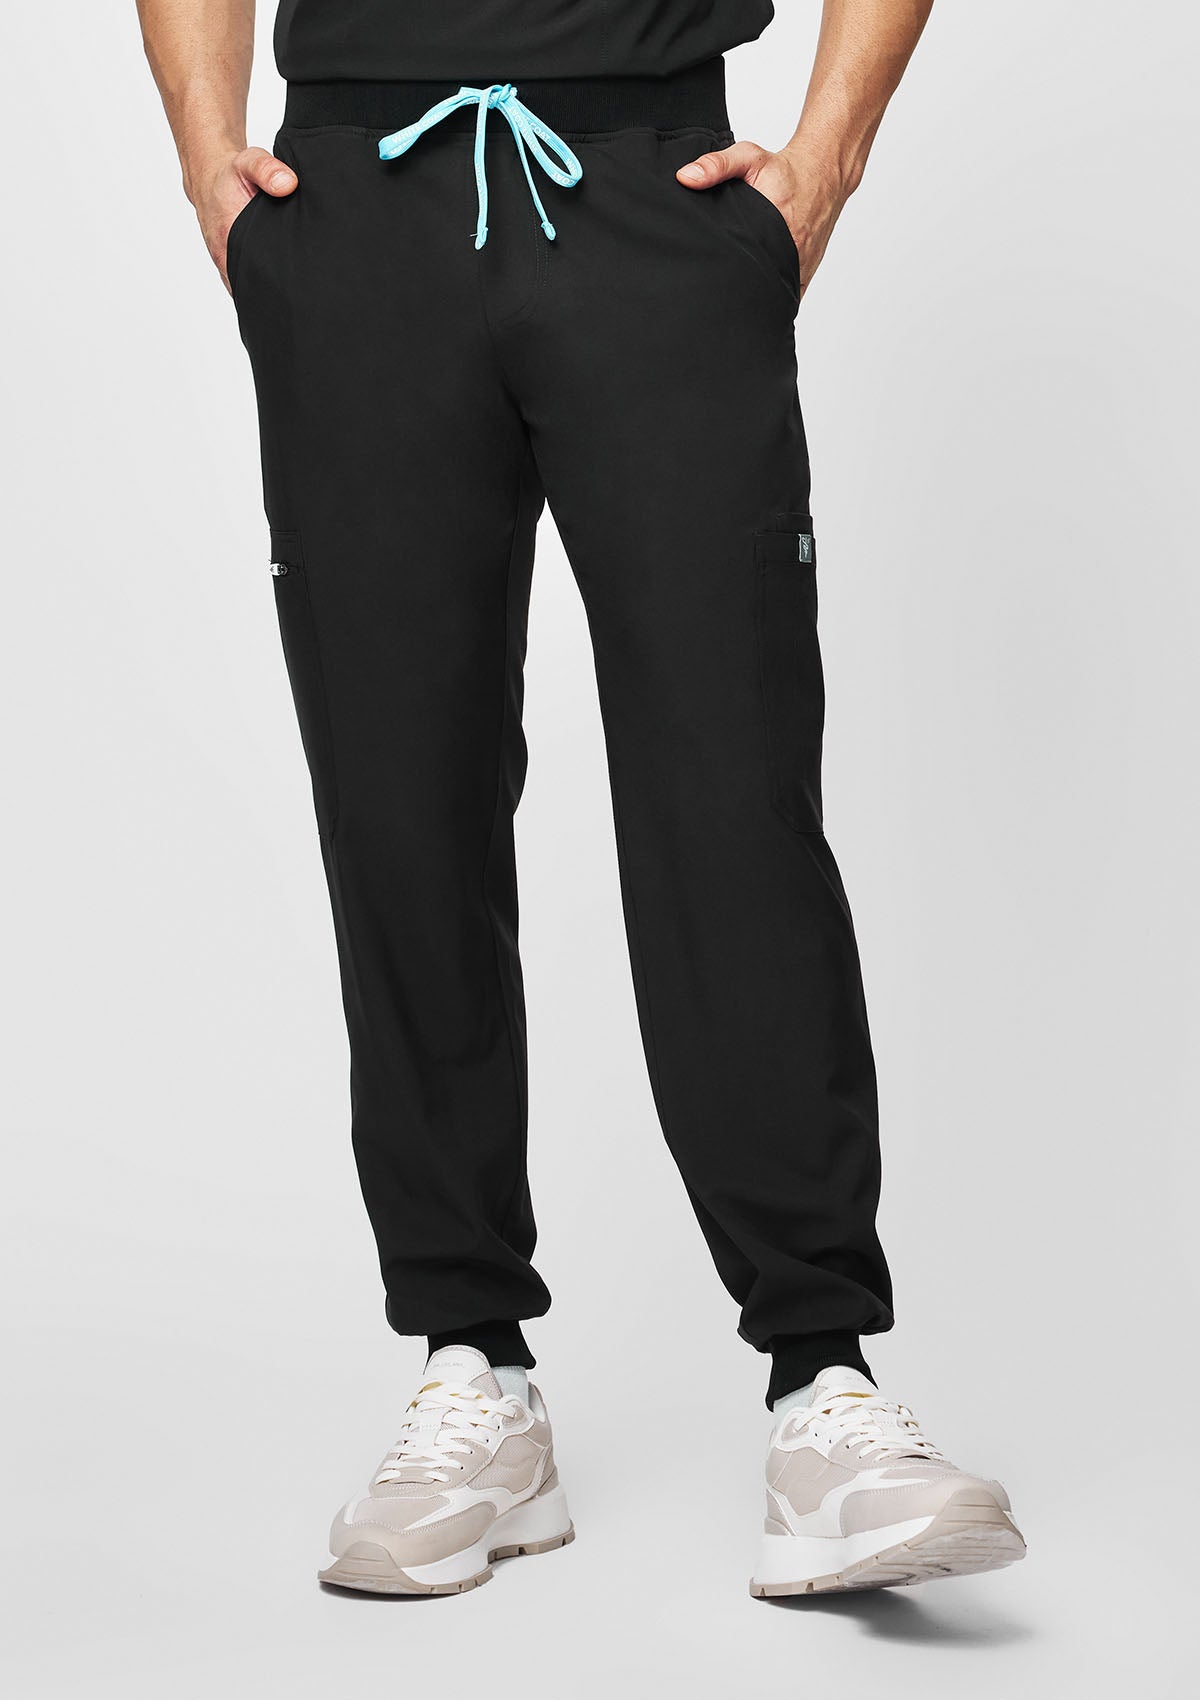 Jogger MoveTech® Scrub Pants - Men / So Black